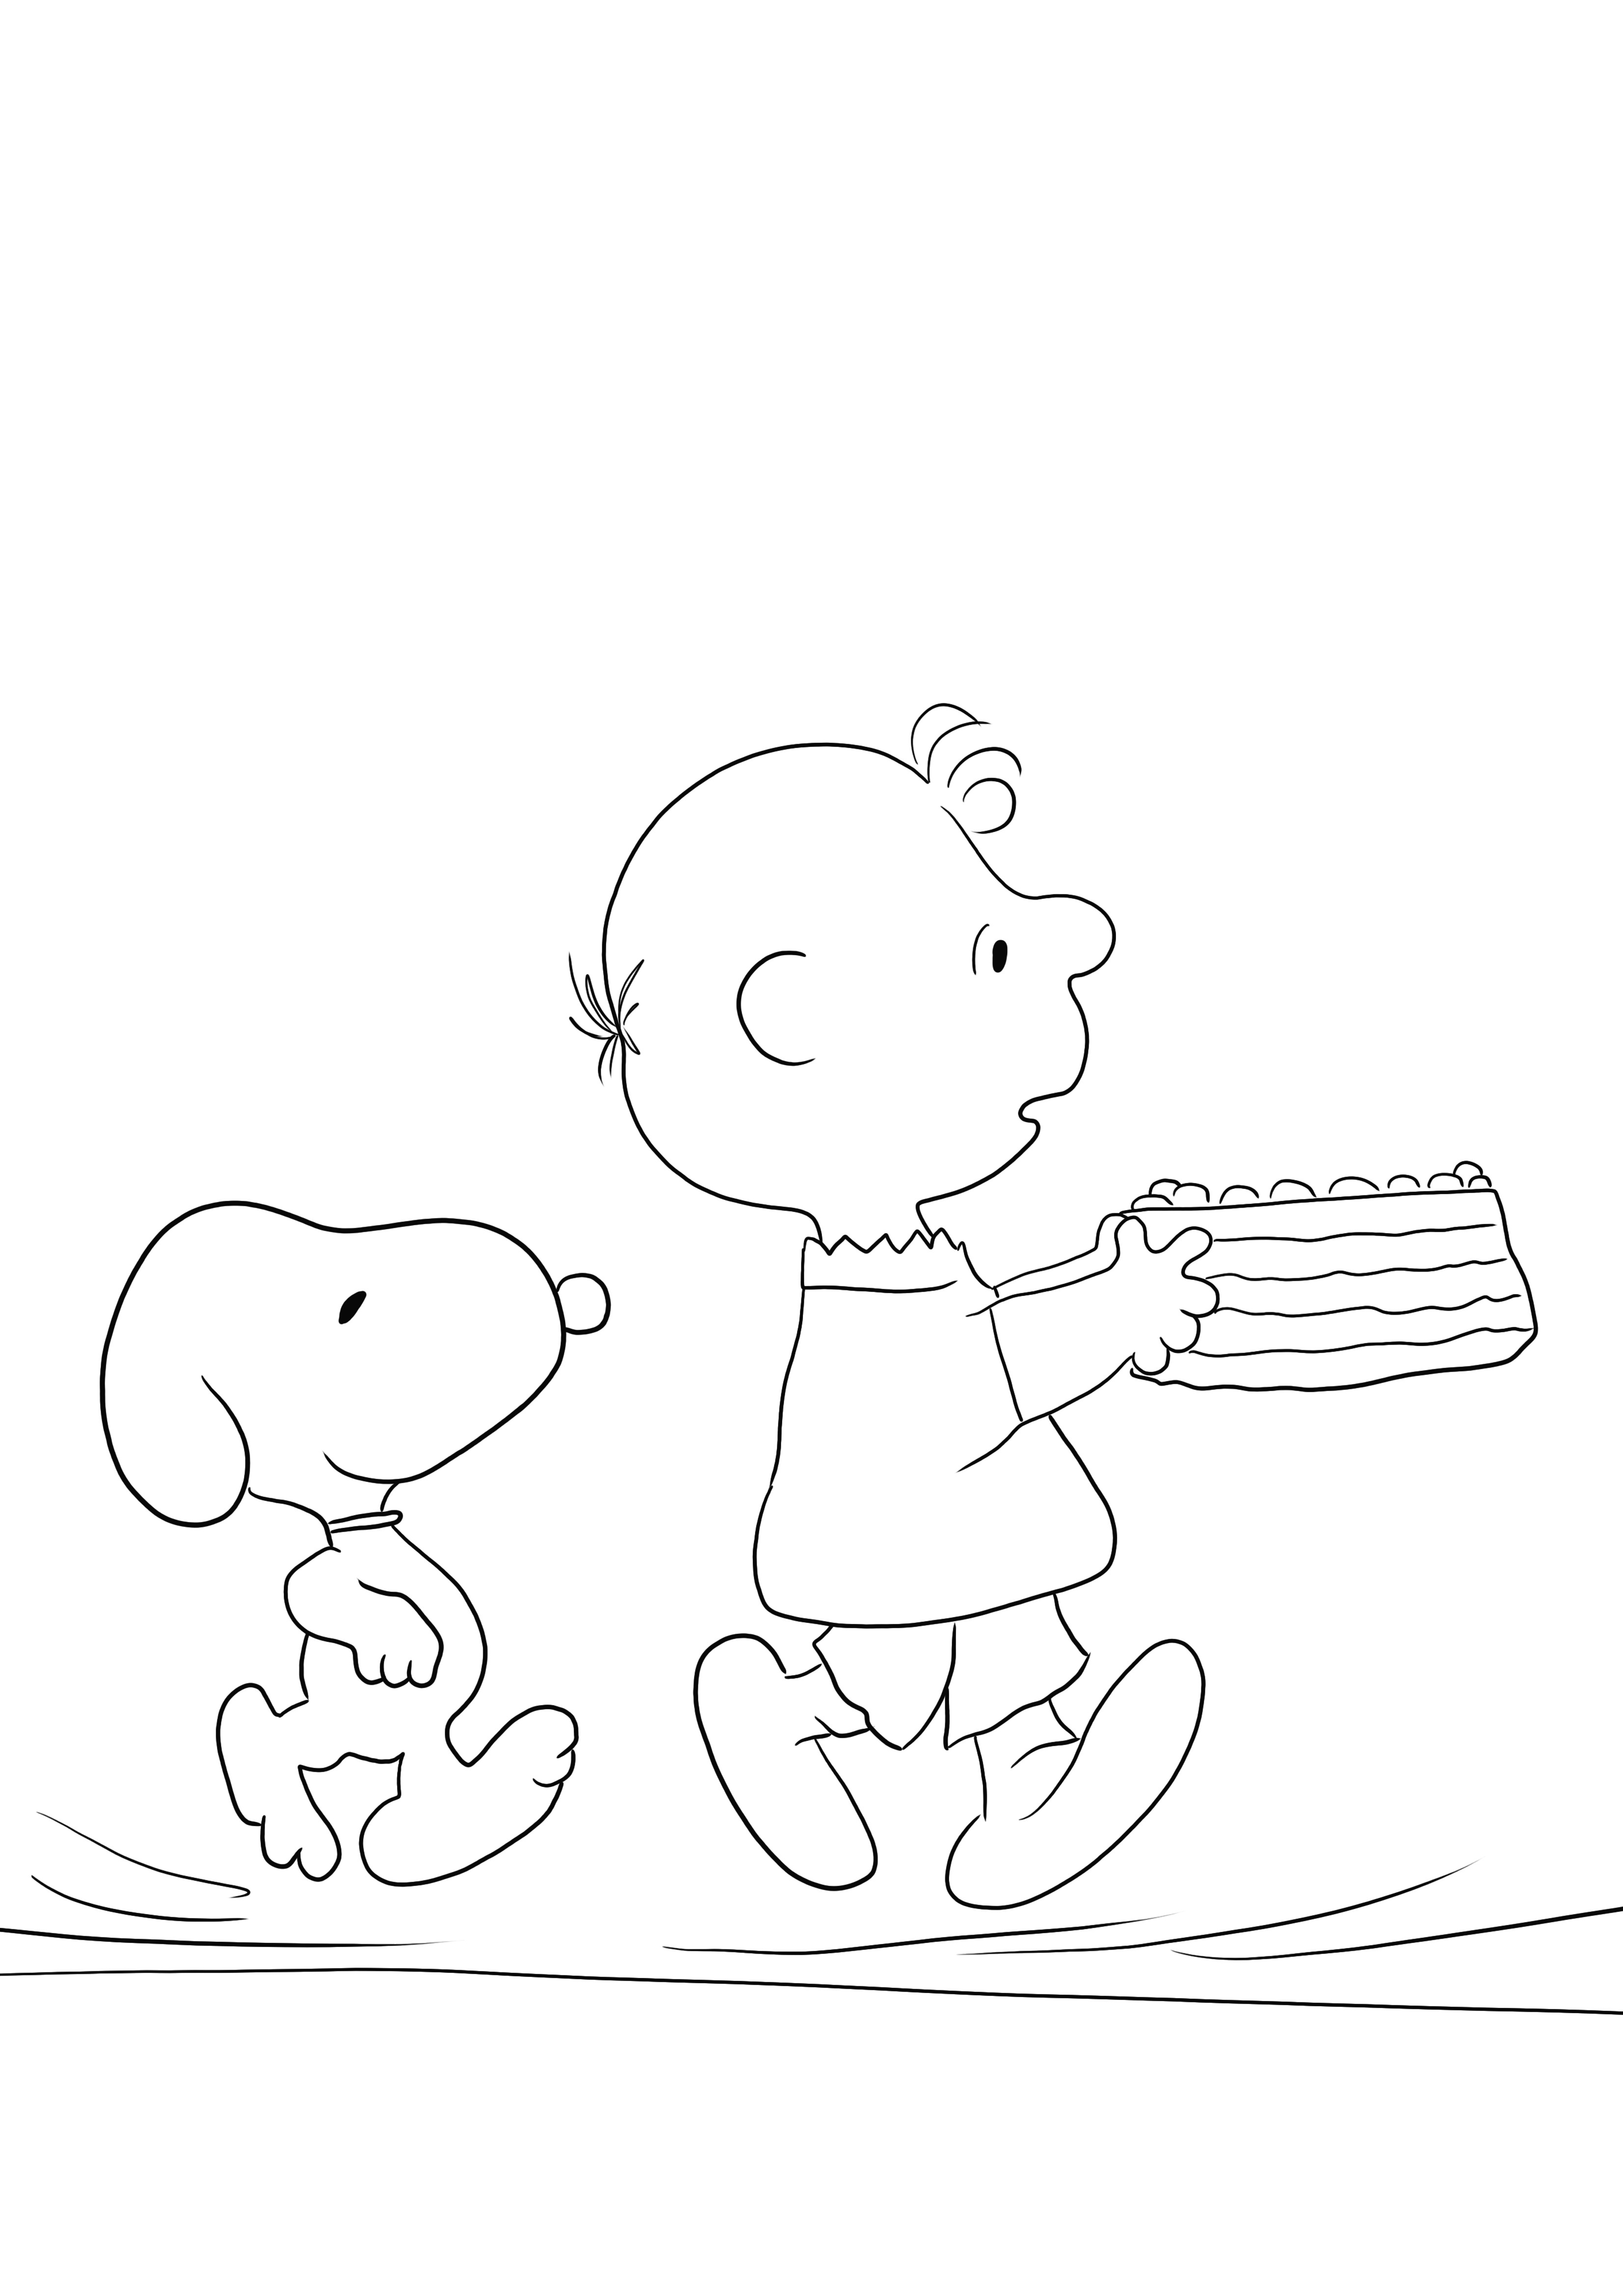 Yksinkertainen ja ilmainen tulostettava väritysarkki Snoopy Birthdaysta oppiaksesi hauskasti